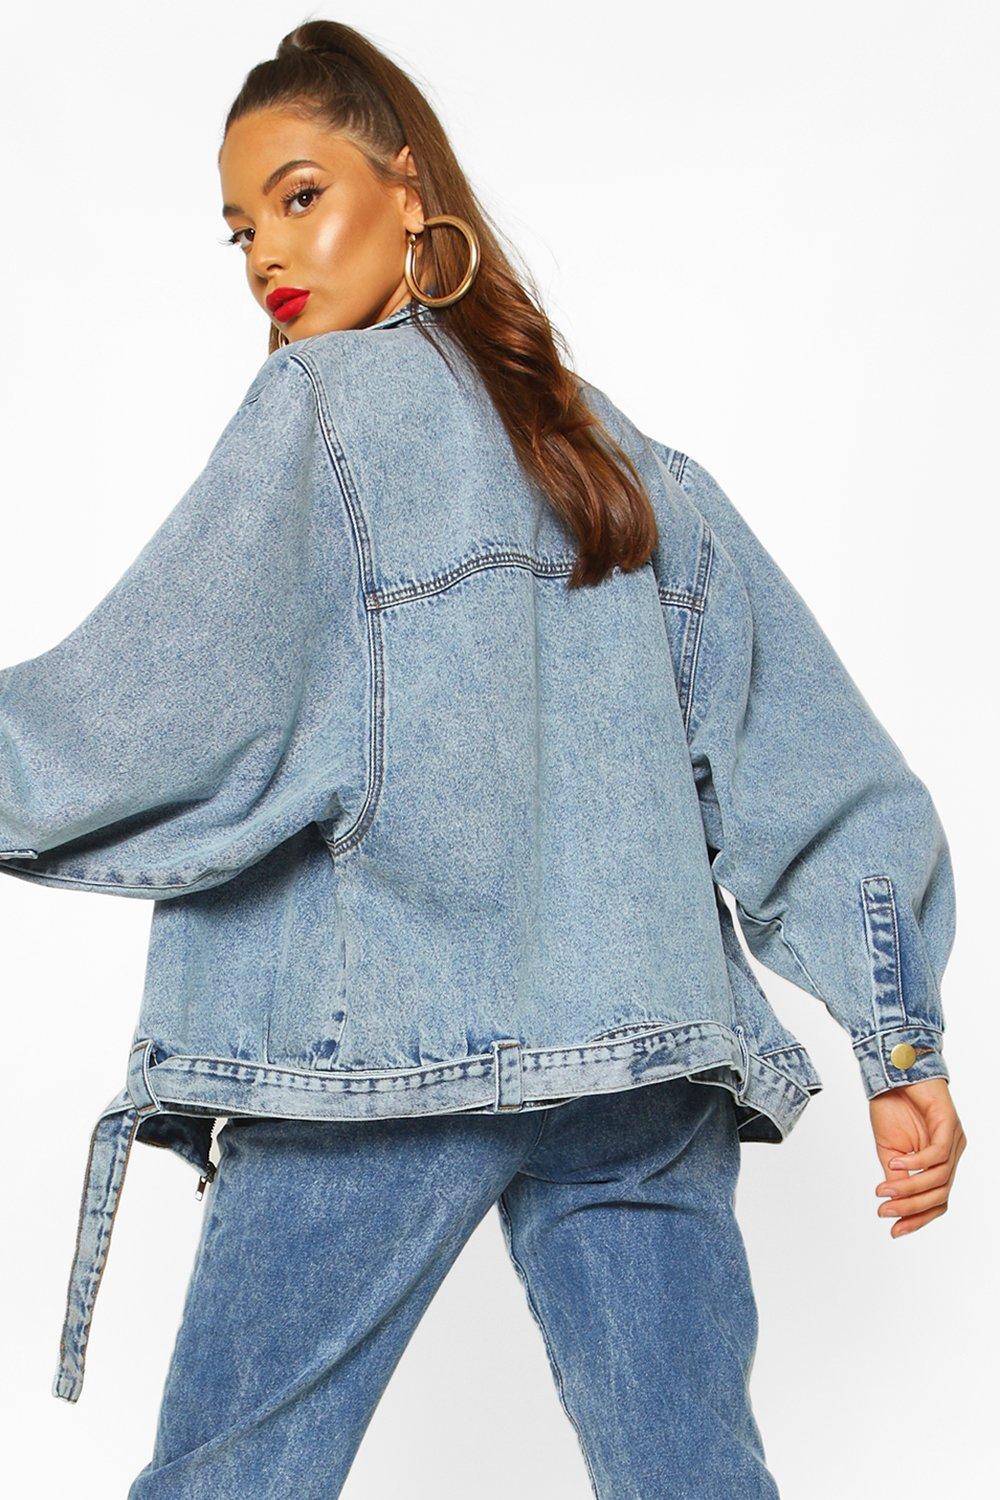 80s style jean jacket